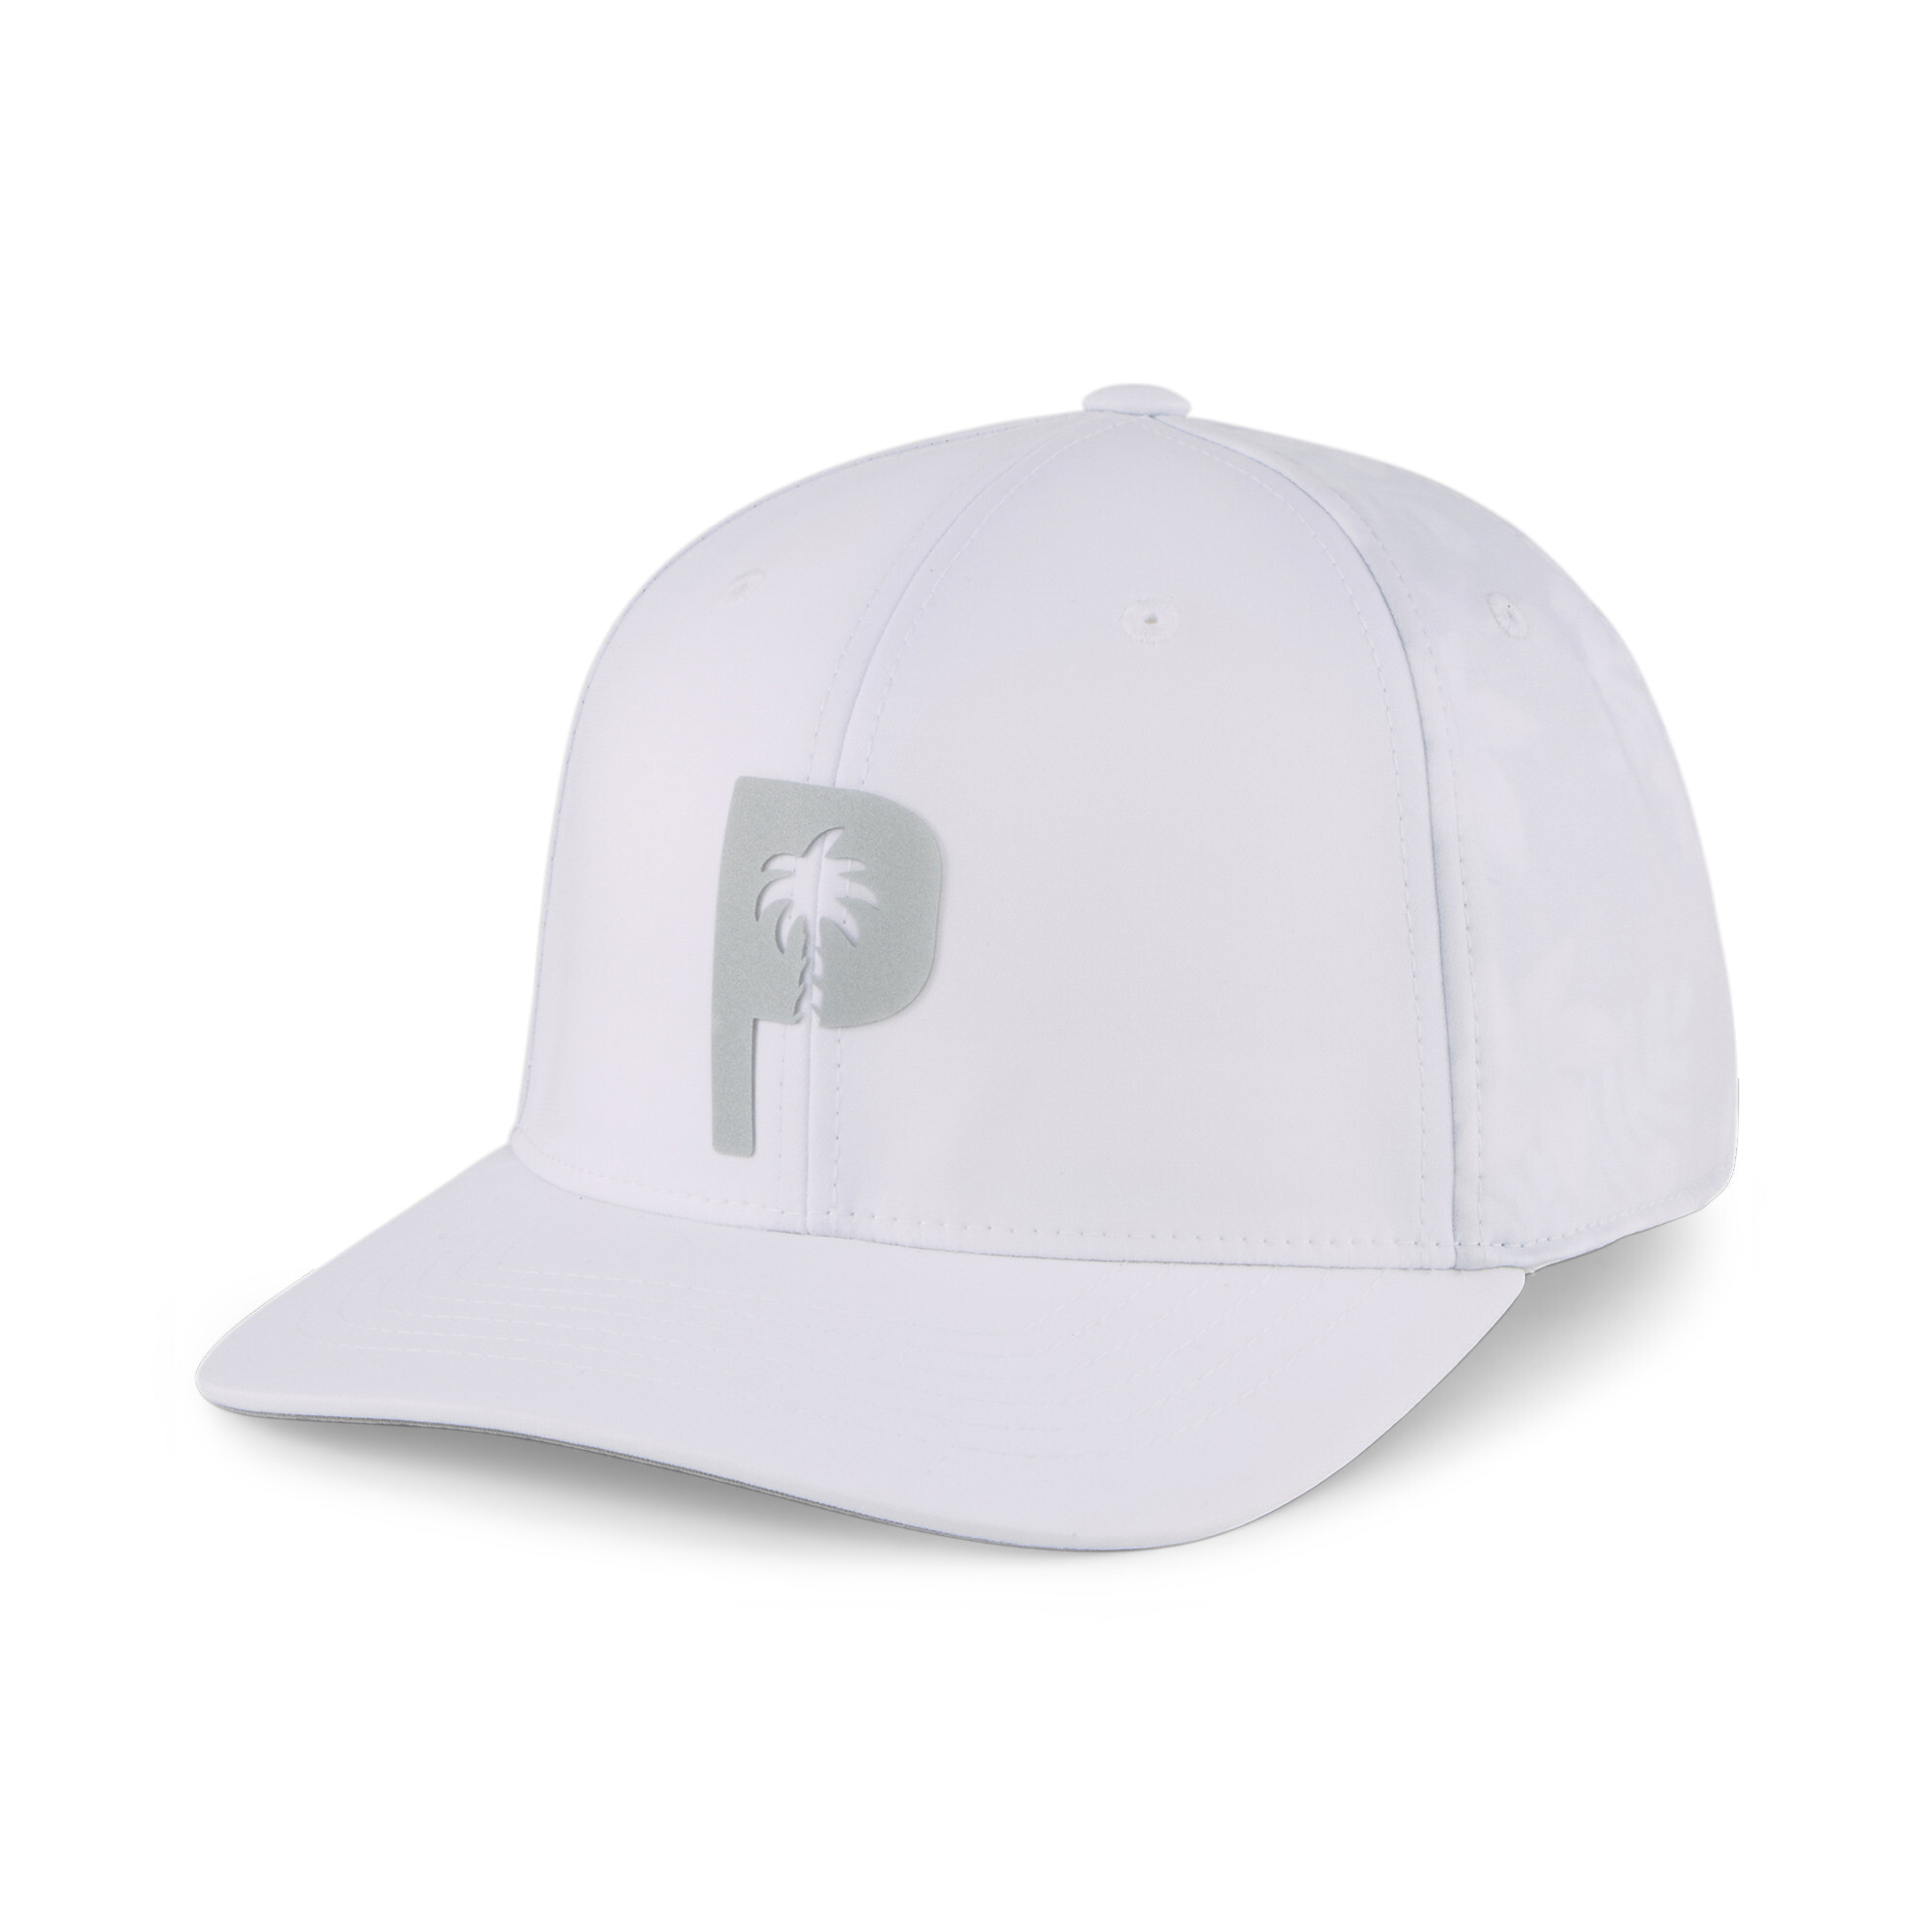  プーマ メンズ ゴルフ PUMA x PTC キャップ メンズ White Glow ｜PUMA.com